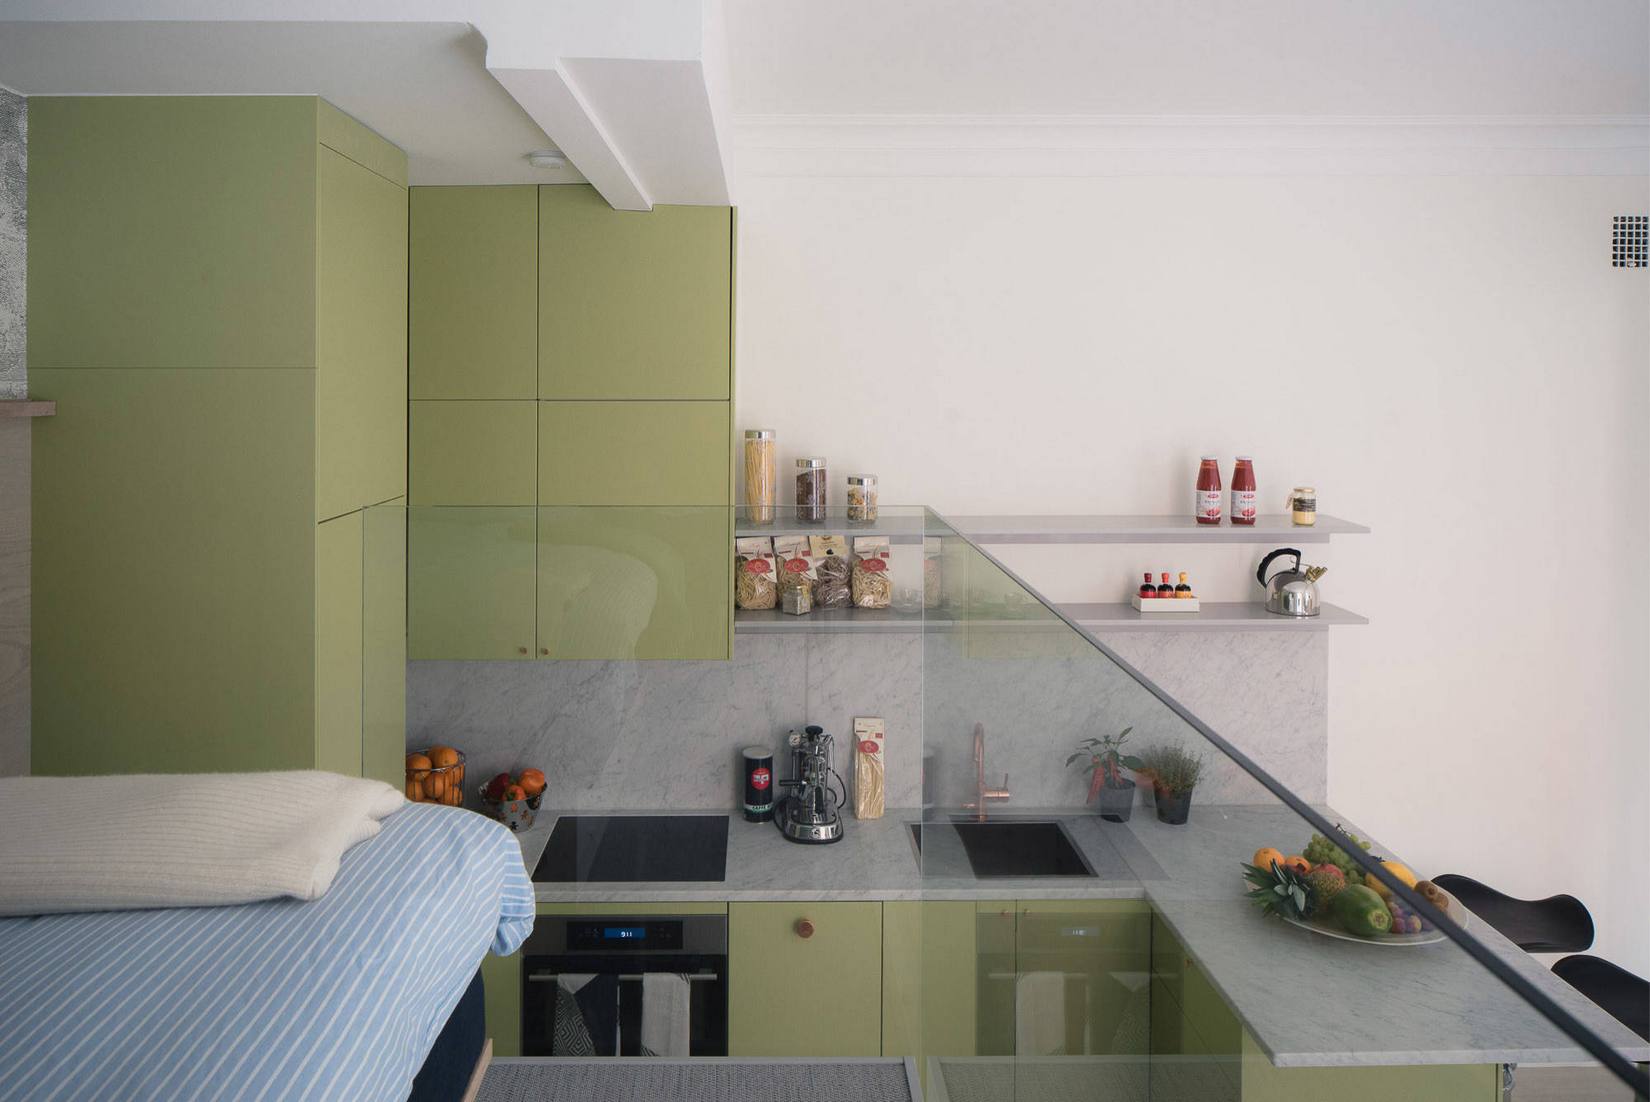 Hình ảnh phòng bếp được chụp từ không gian phòng ngủ cho thấy hệ tủ lưu trữ thiết kế kịch trần nhằm tối ưu hóa chiều cao trần nhà.